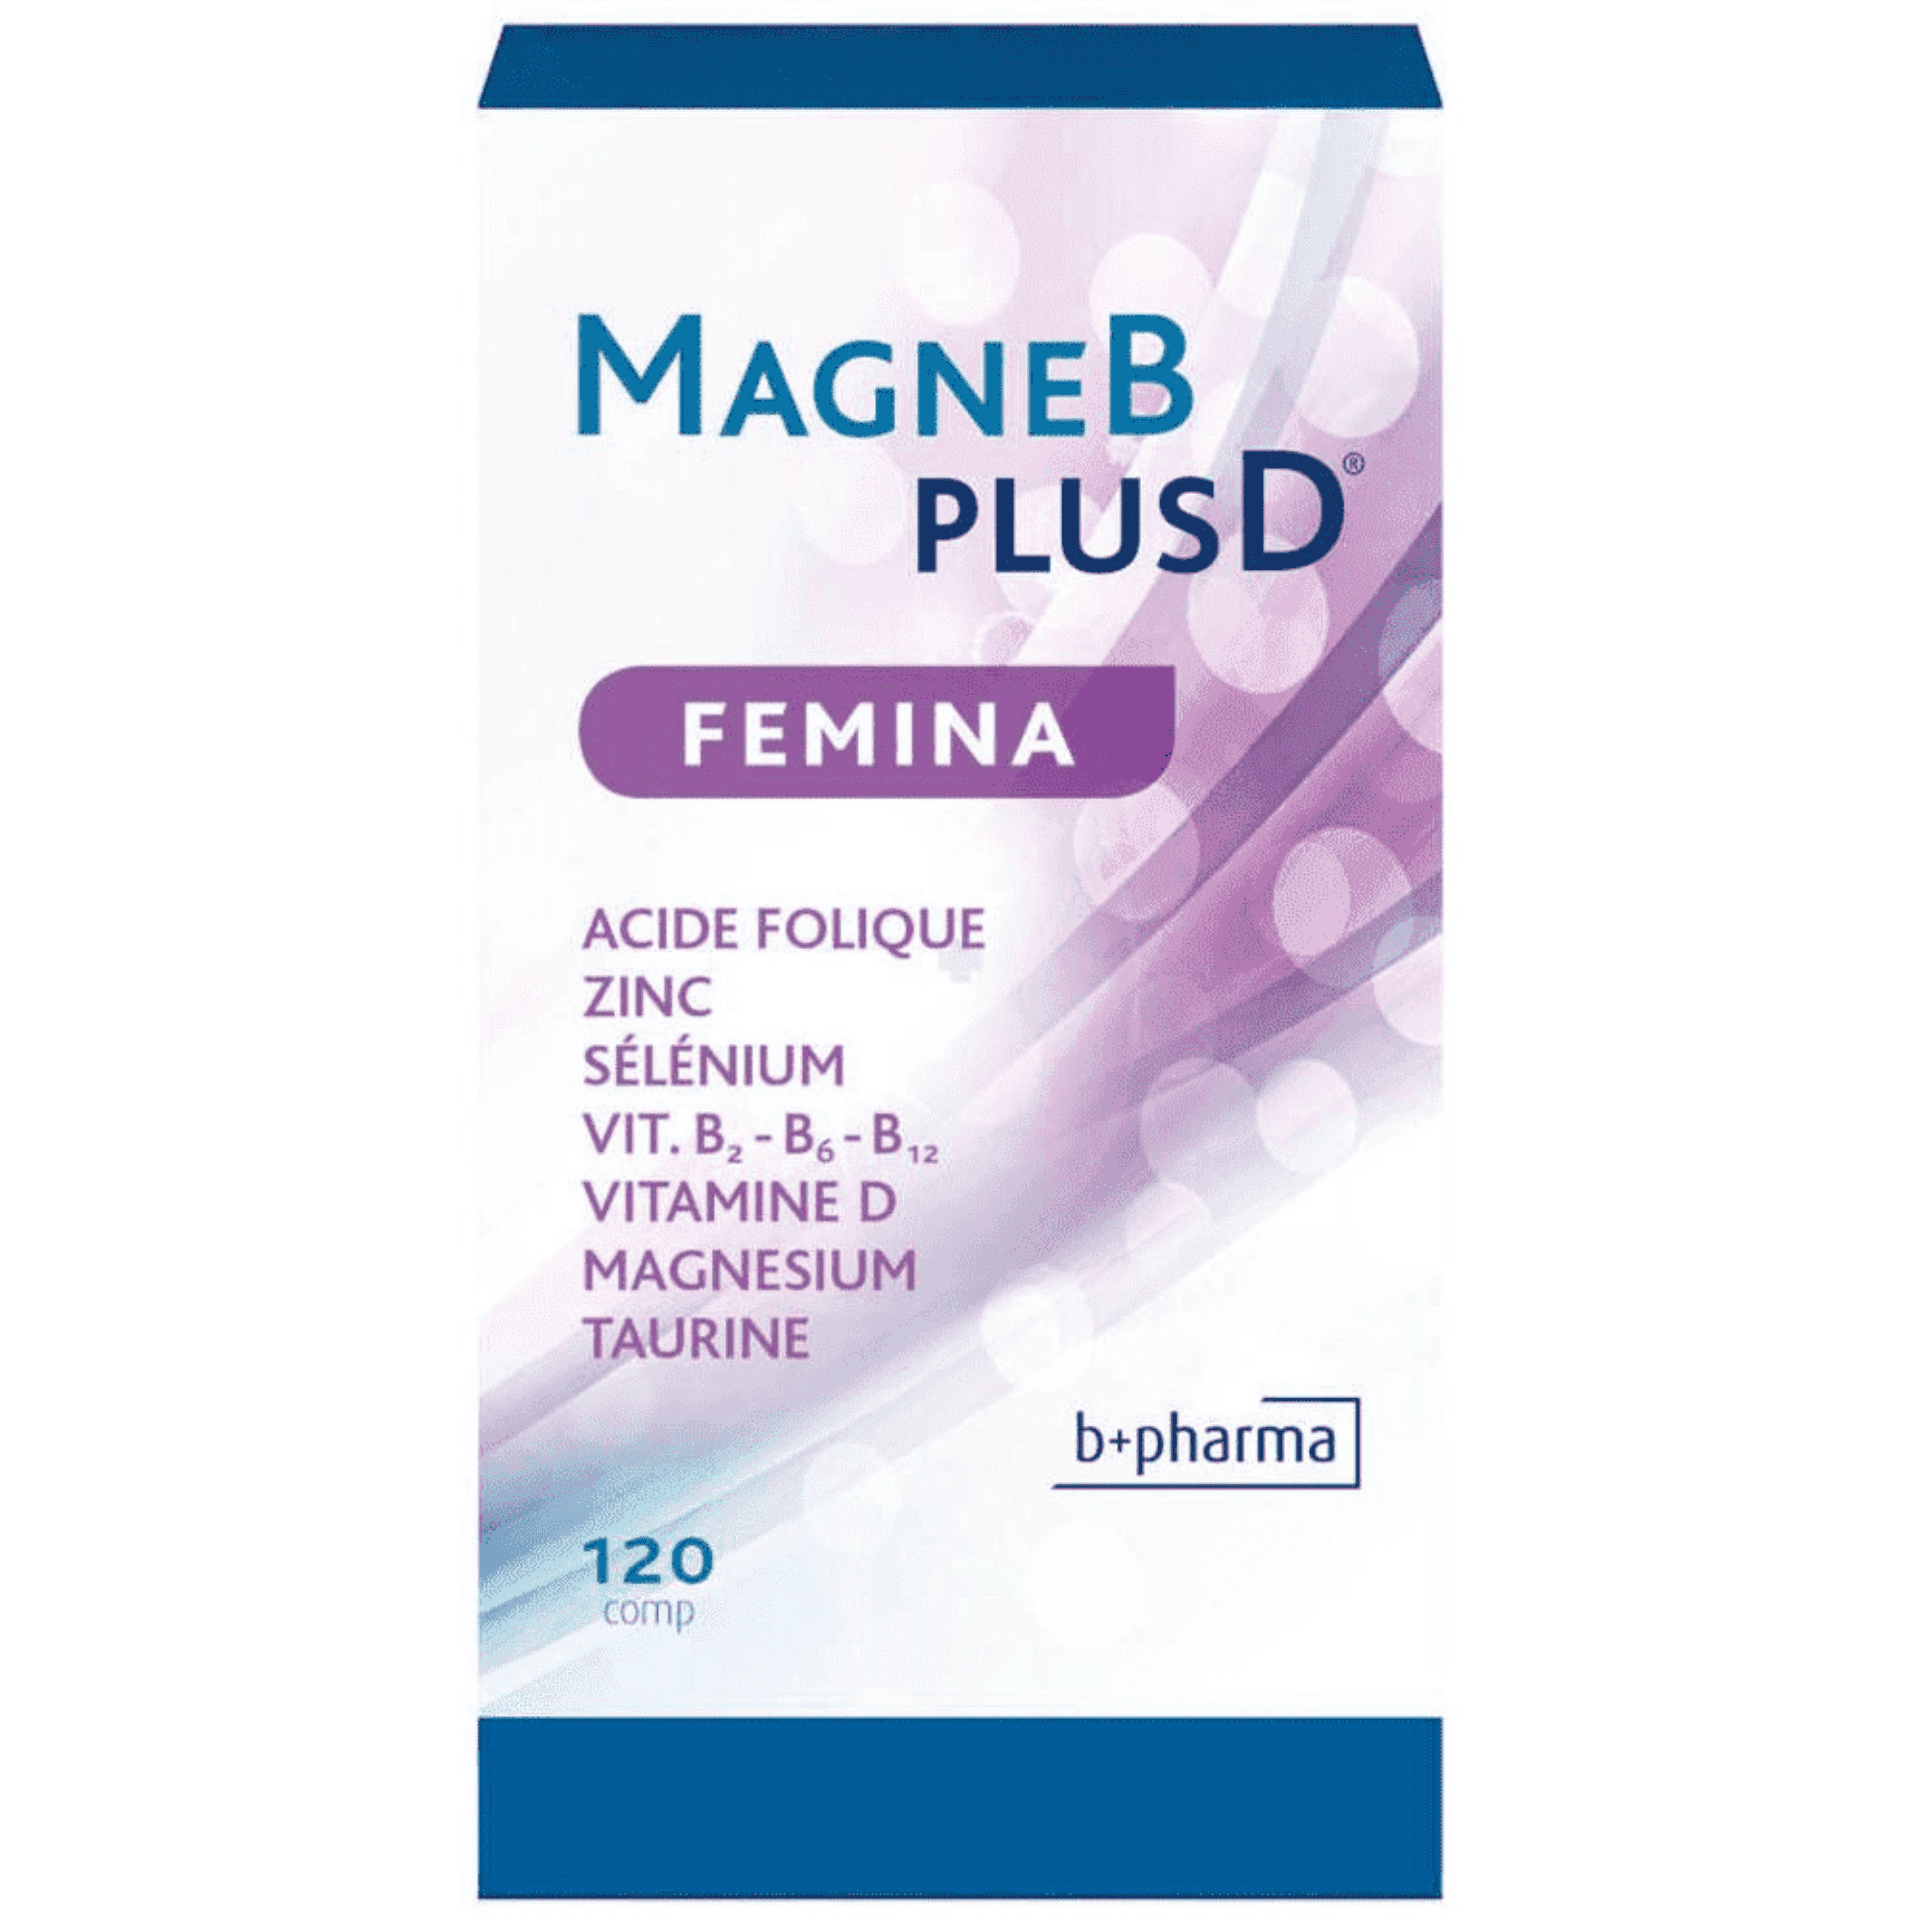 Magne B Plus D Femina 120 tabletten